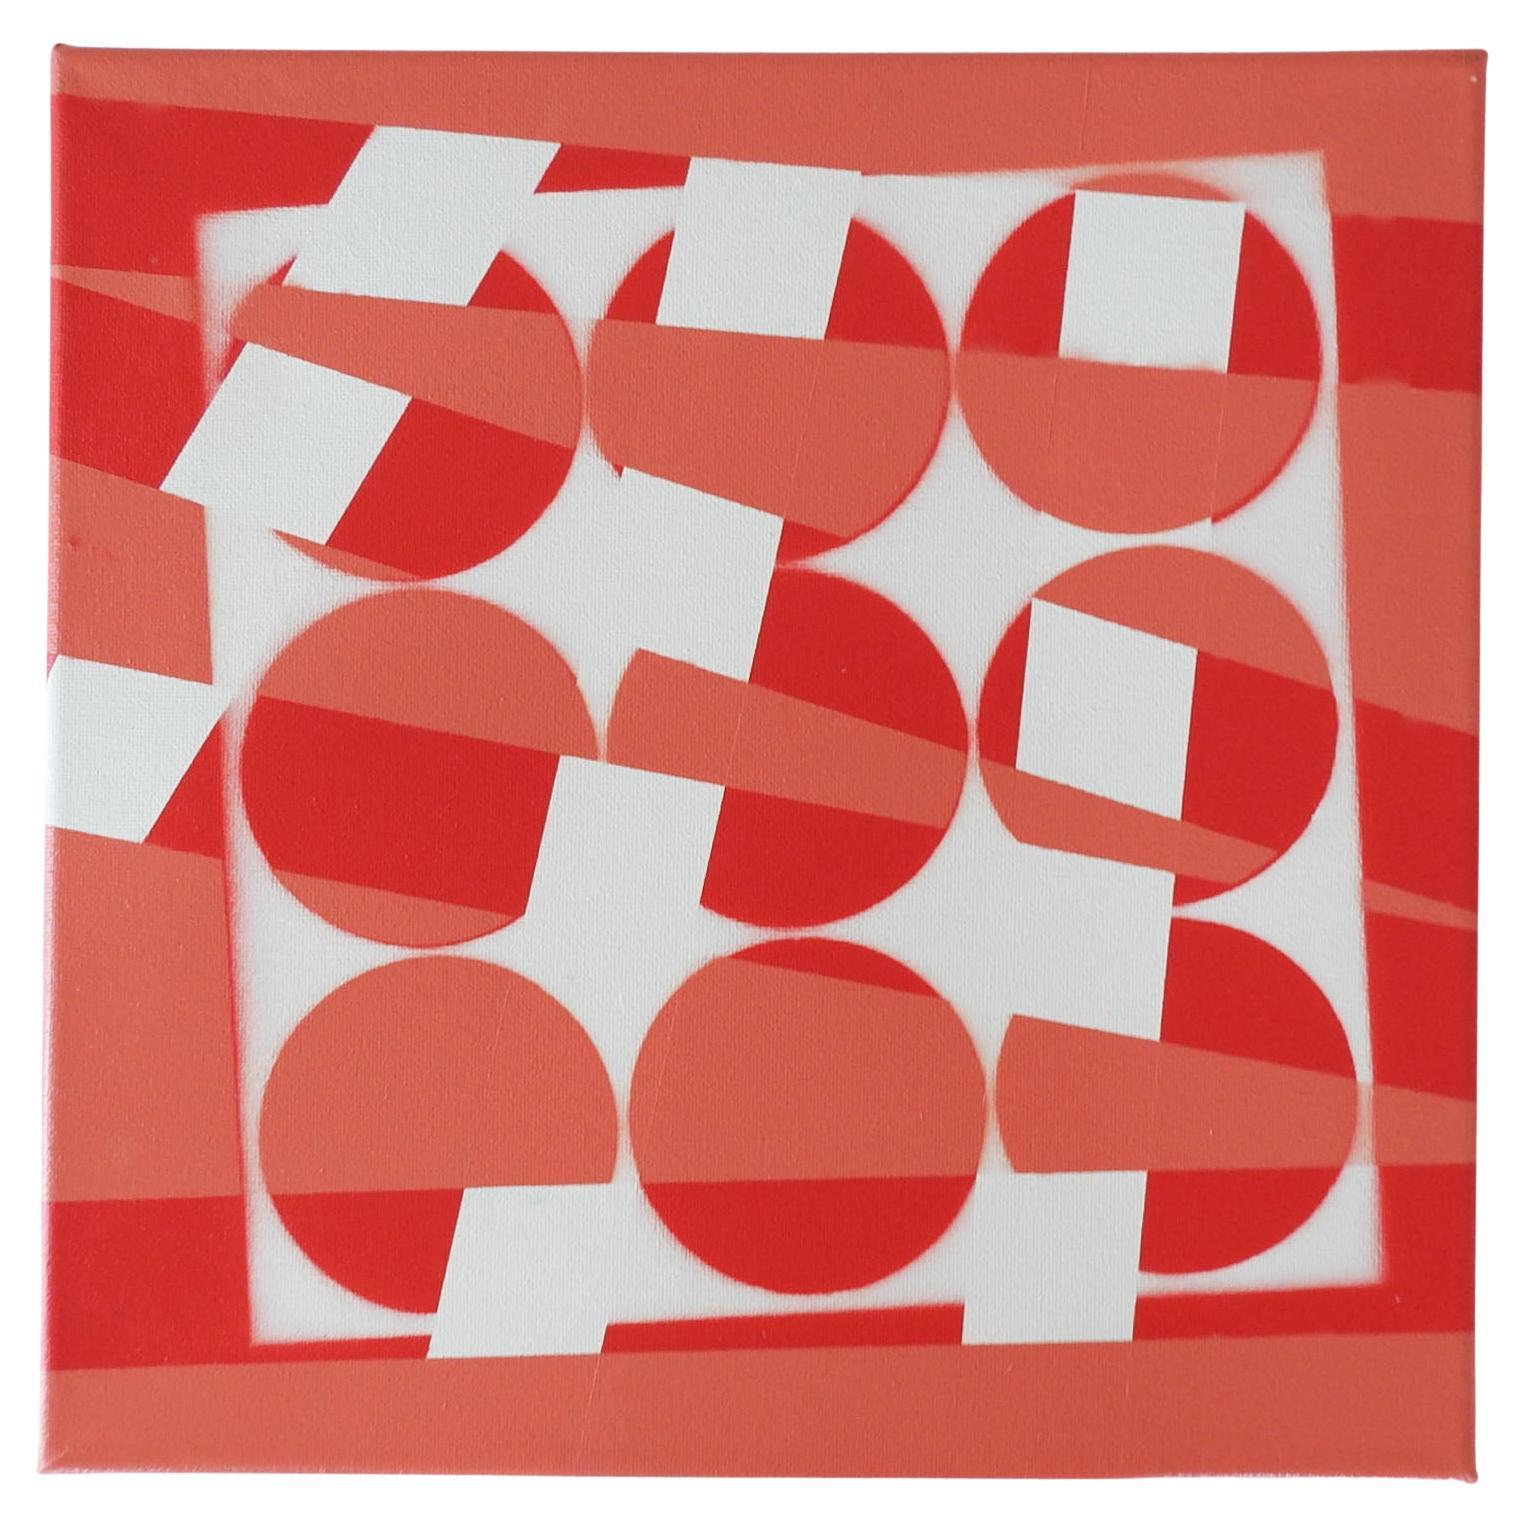 Zeitgenössisches abstraktes Farbblock-Gemälde in Rot-Weiß